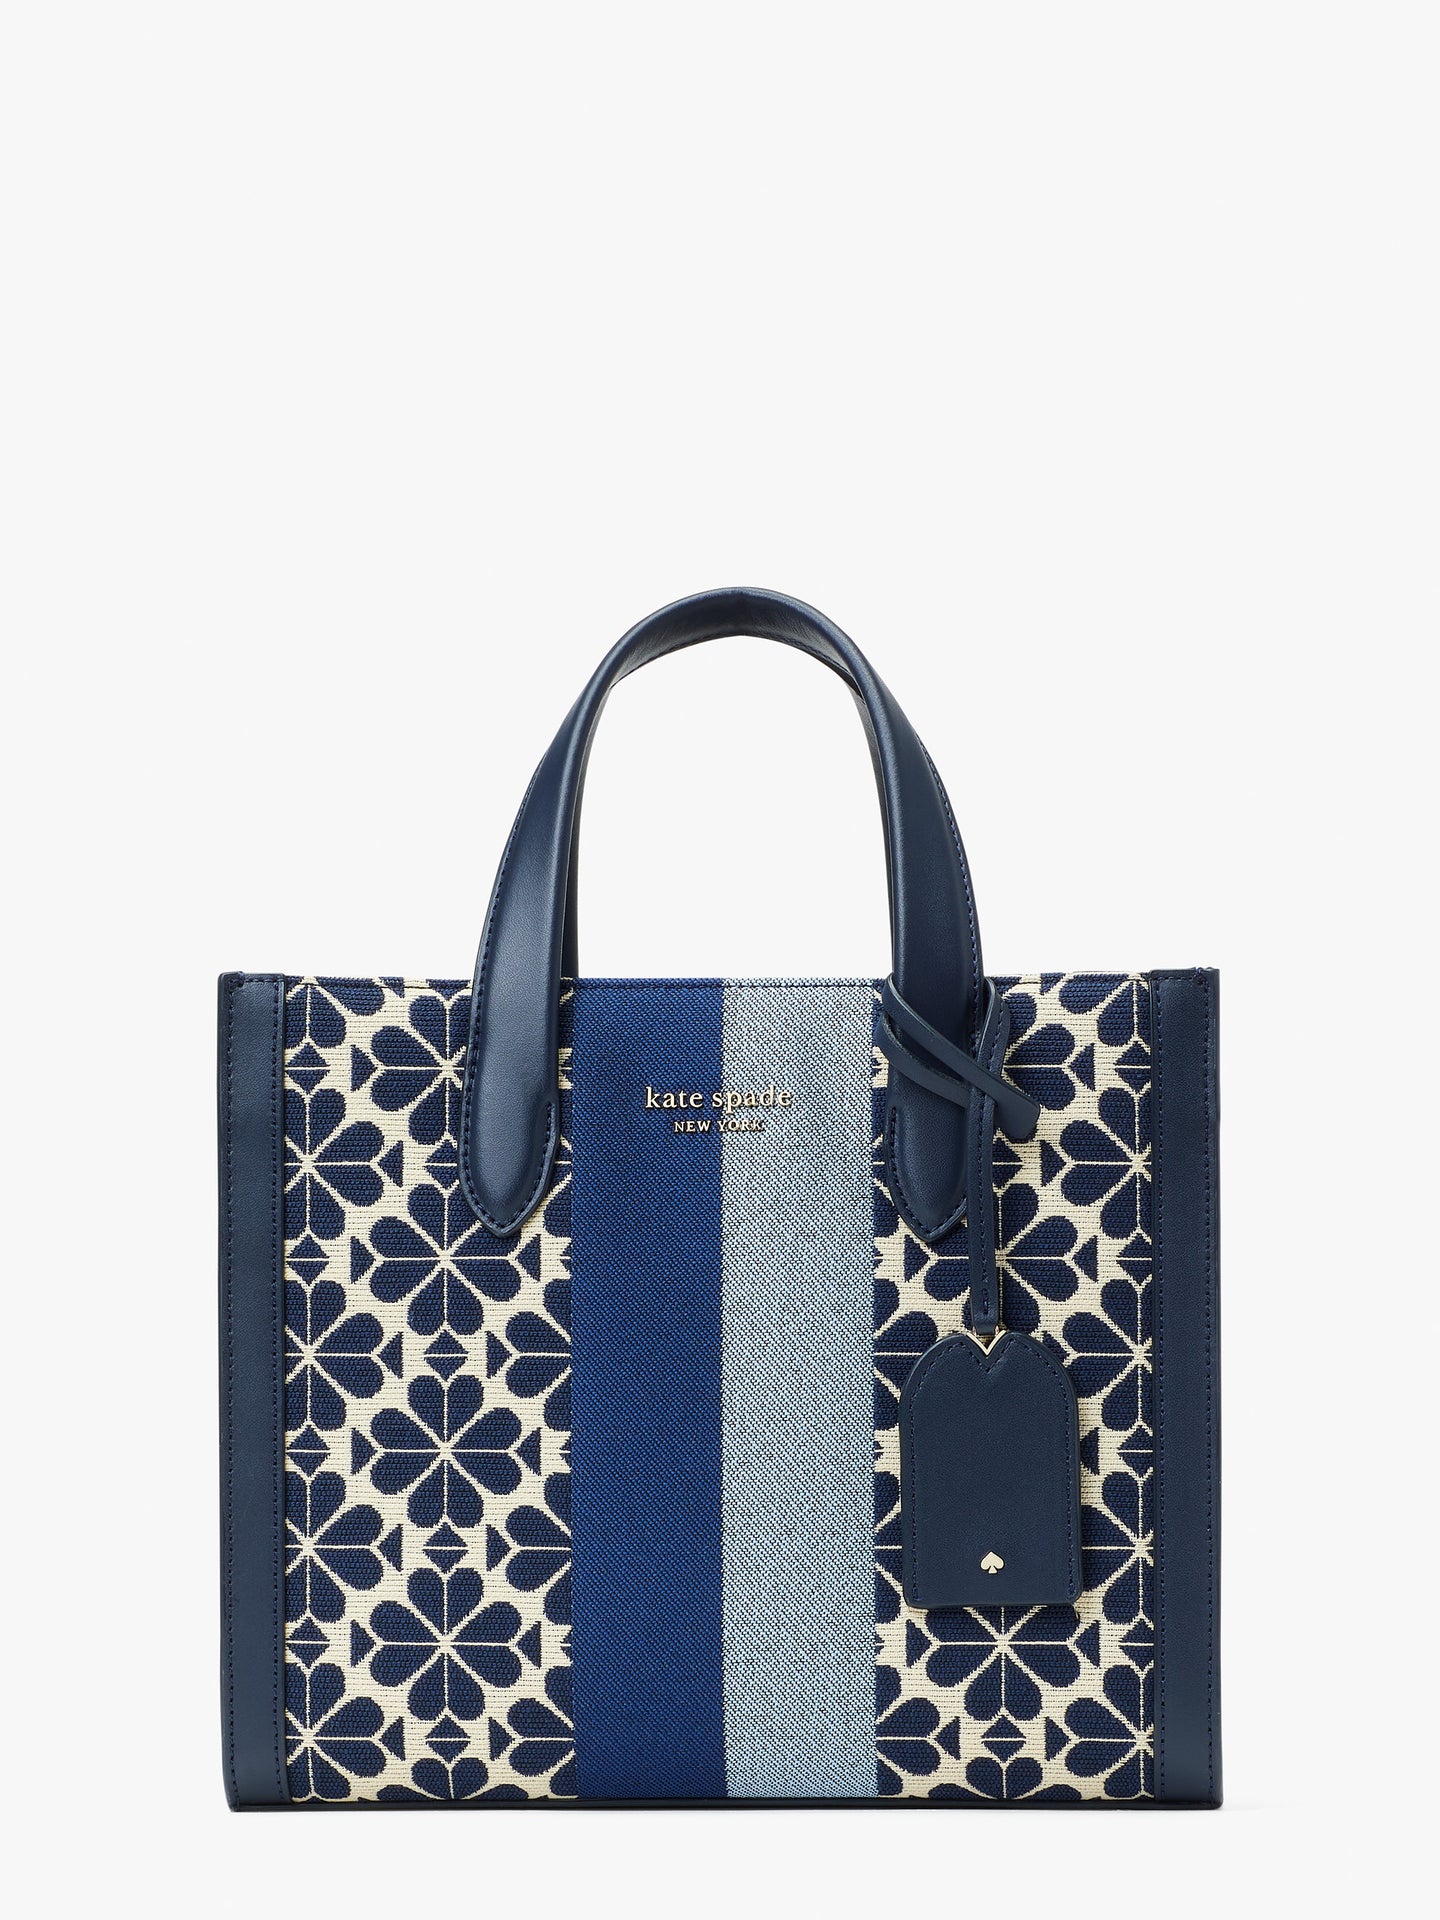 Buy KLEIO Floral Printed Tote Shoulder Handbag For Women Ladies Online